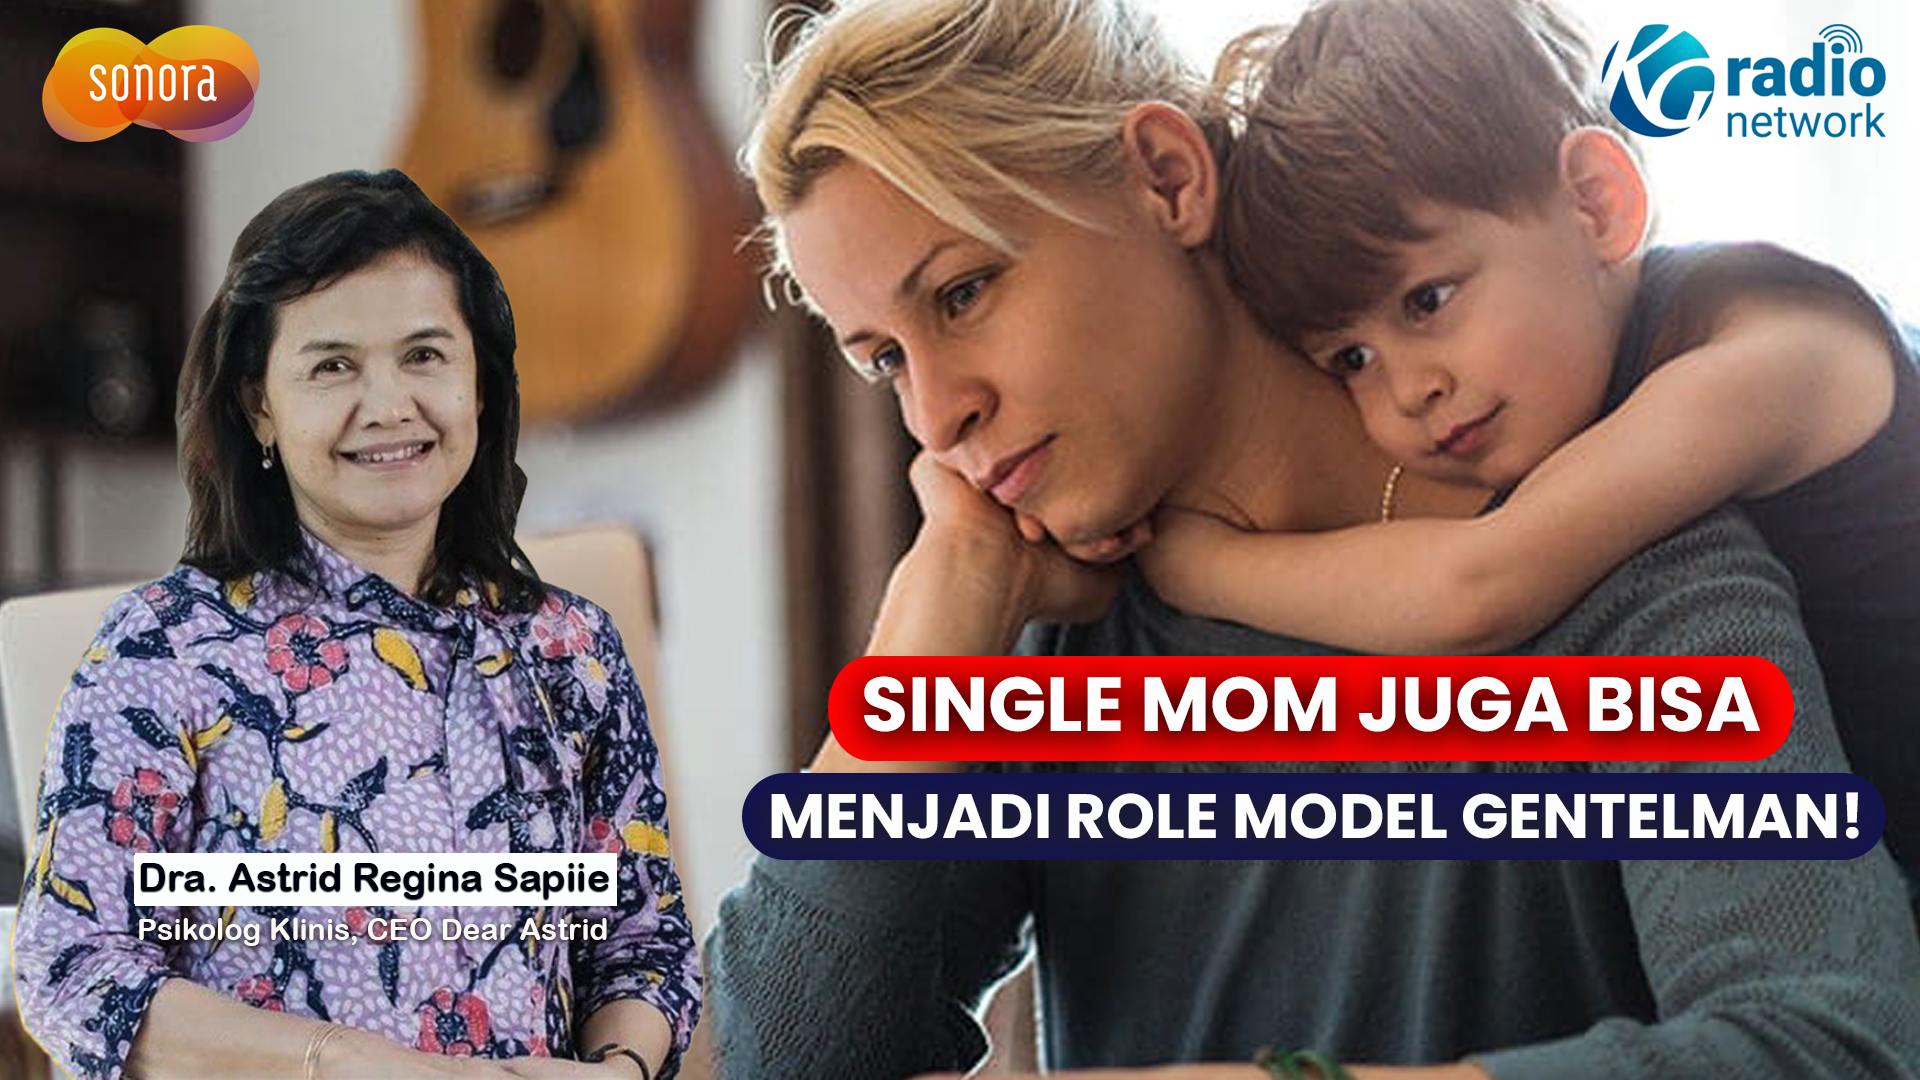 TIPS MENGAJARKAN SIKAP GENTLEMAN PADA ANAK BAGI SINGLE MOM | Sonora Parenting